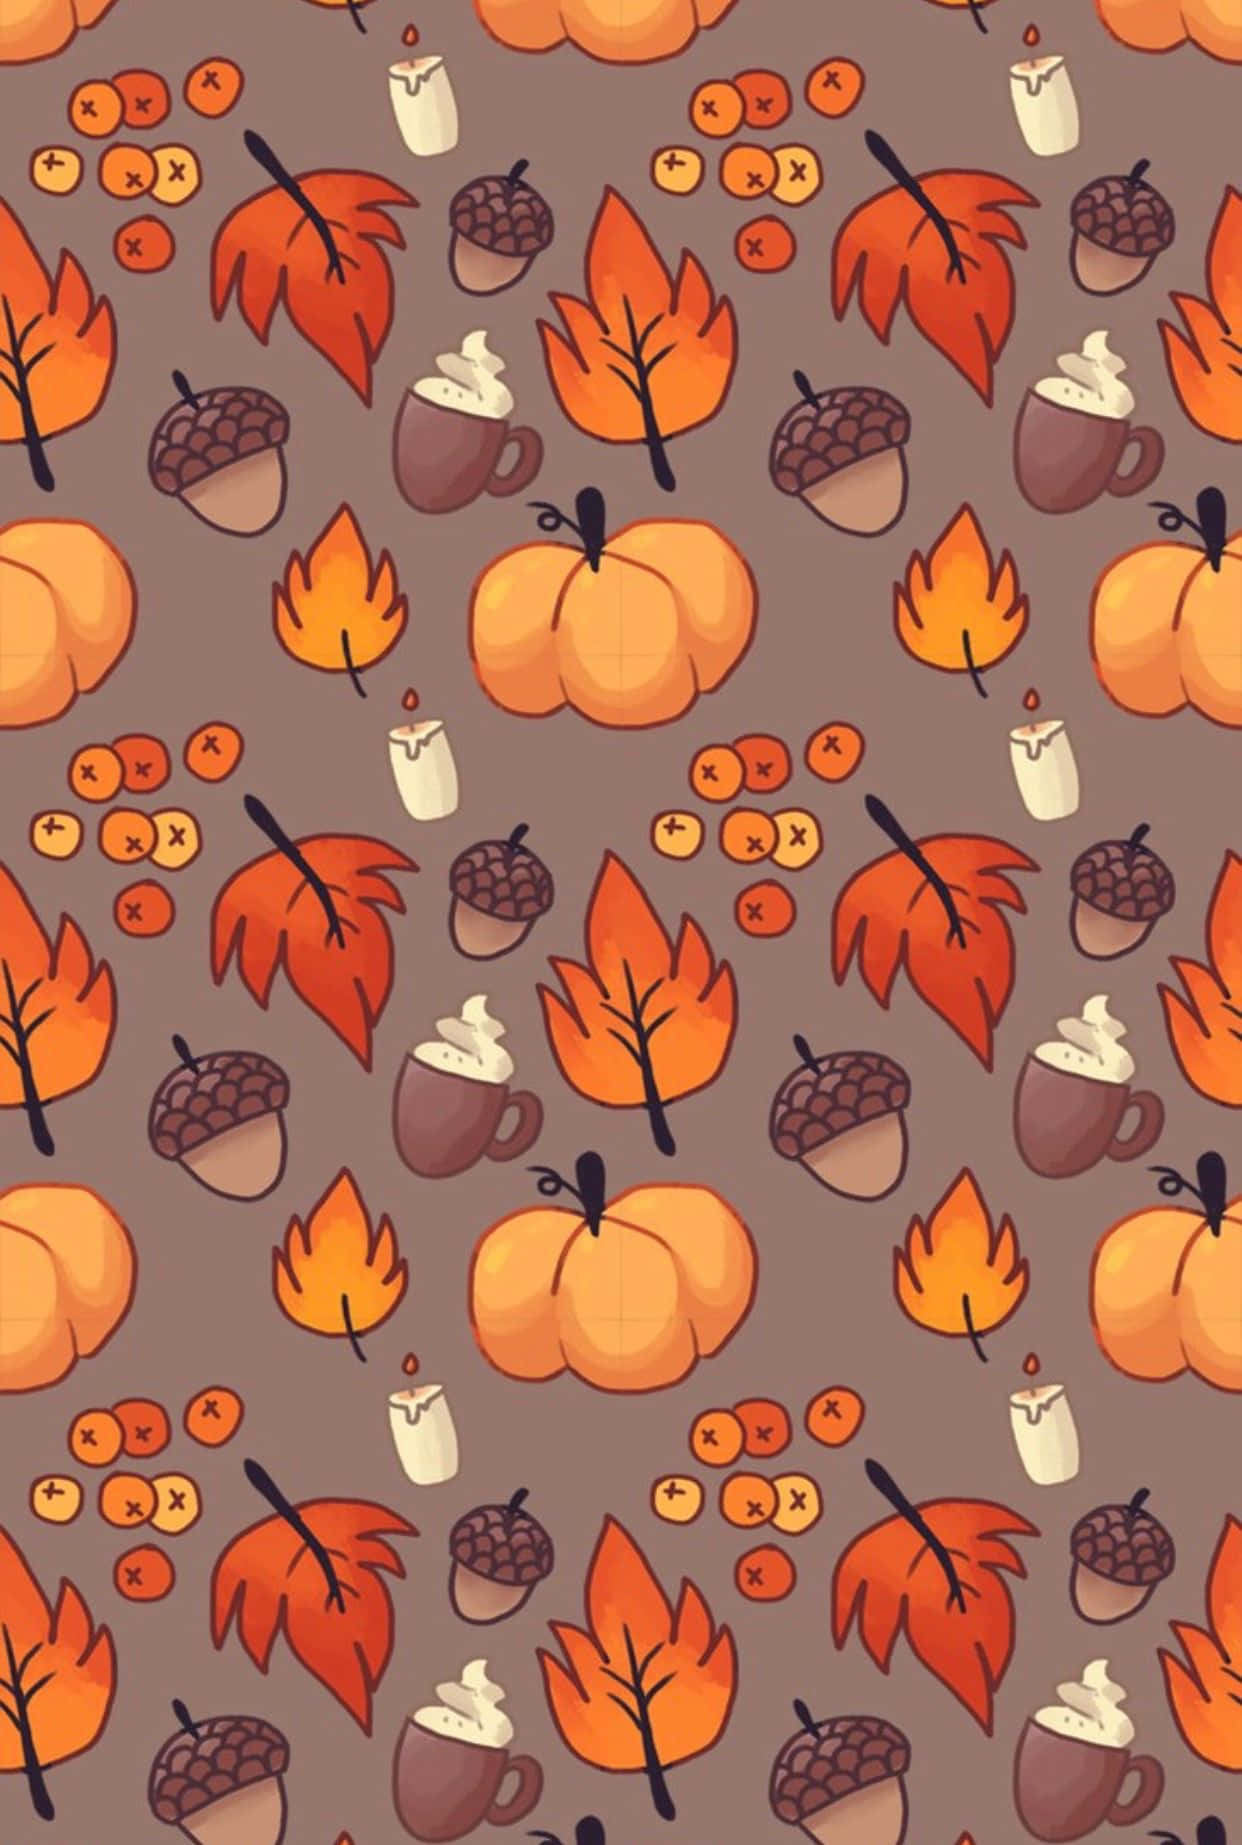 Fejrer efteråret og alle helgens aften med et festligt efterårsmotiv på din iPhone! Wallpaper